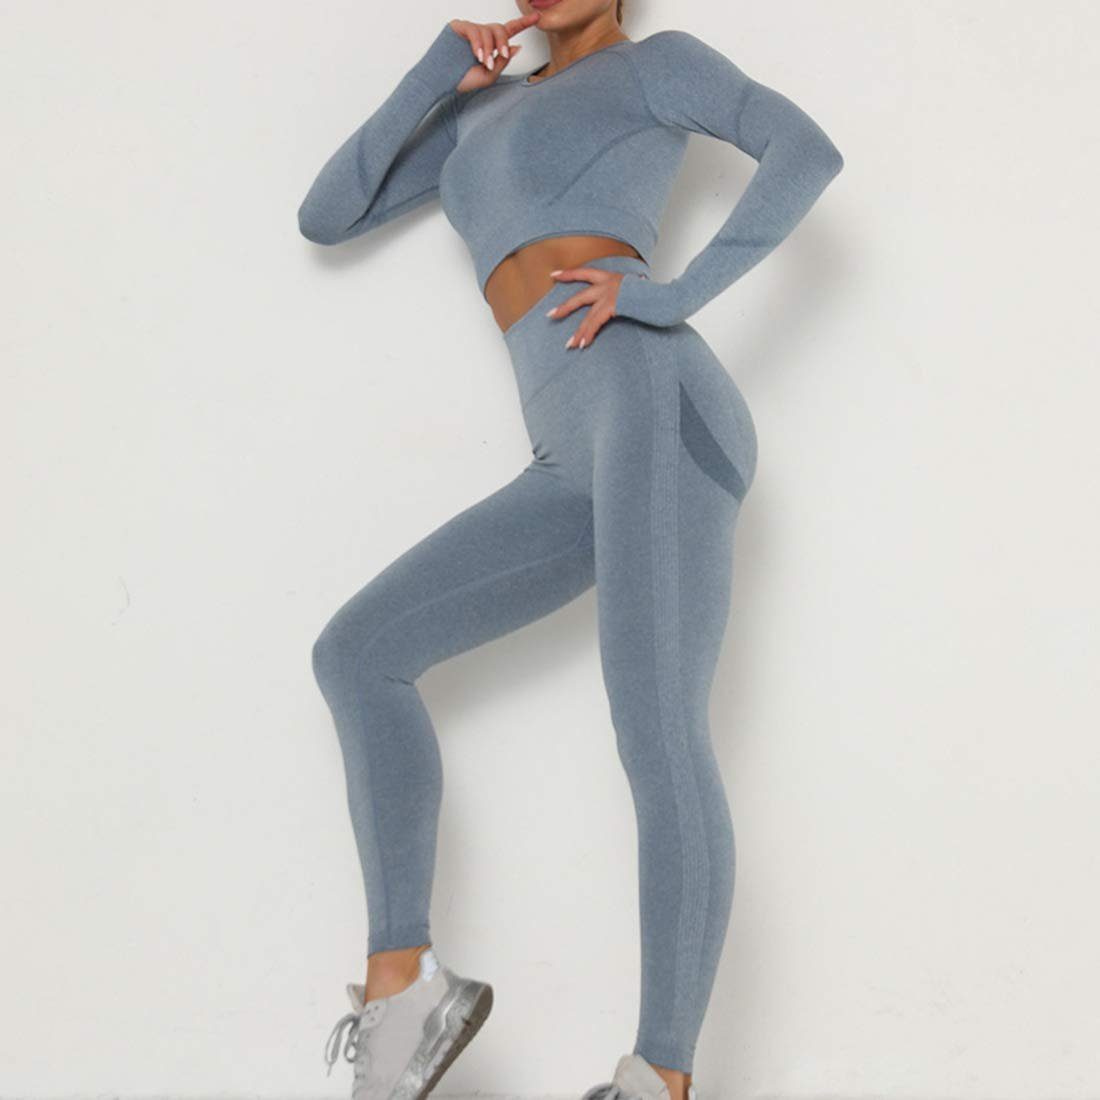 MUYOGRT Damen Sportanzug Trainingsanzug Jogginganzug Sport Sets Yoga Outfit 2-teiliges Bekleidungssets Hosen und Crop Top Freizeitanzug Sportswear 